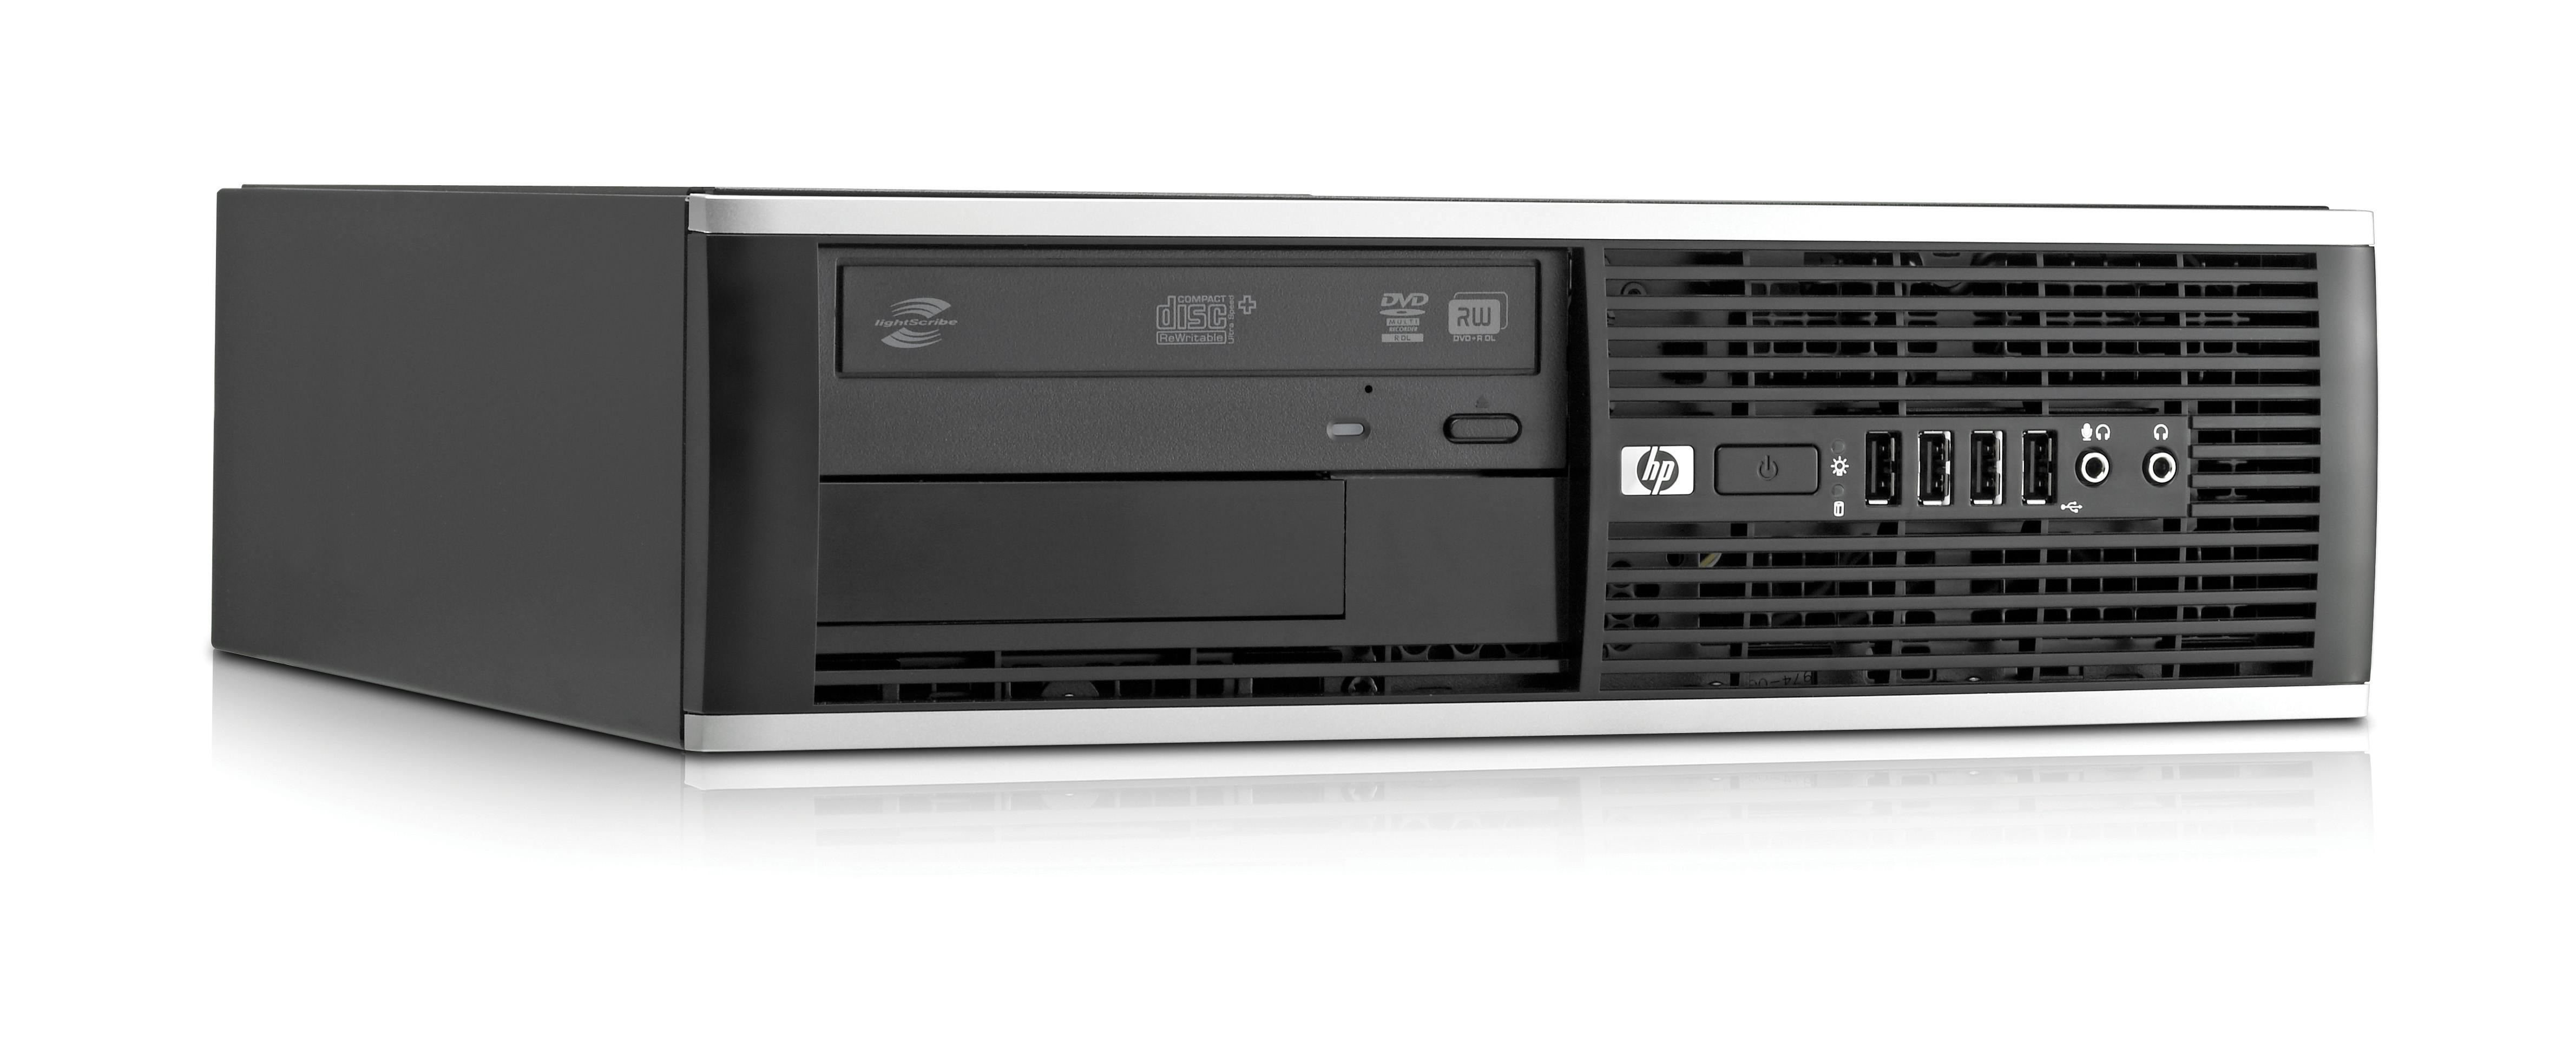  Máy tính đồng bộ HP 6300 Pro SFF Core i5 3470